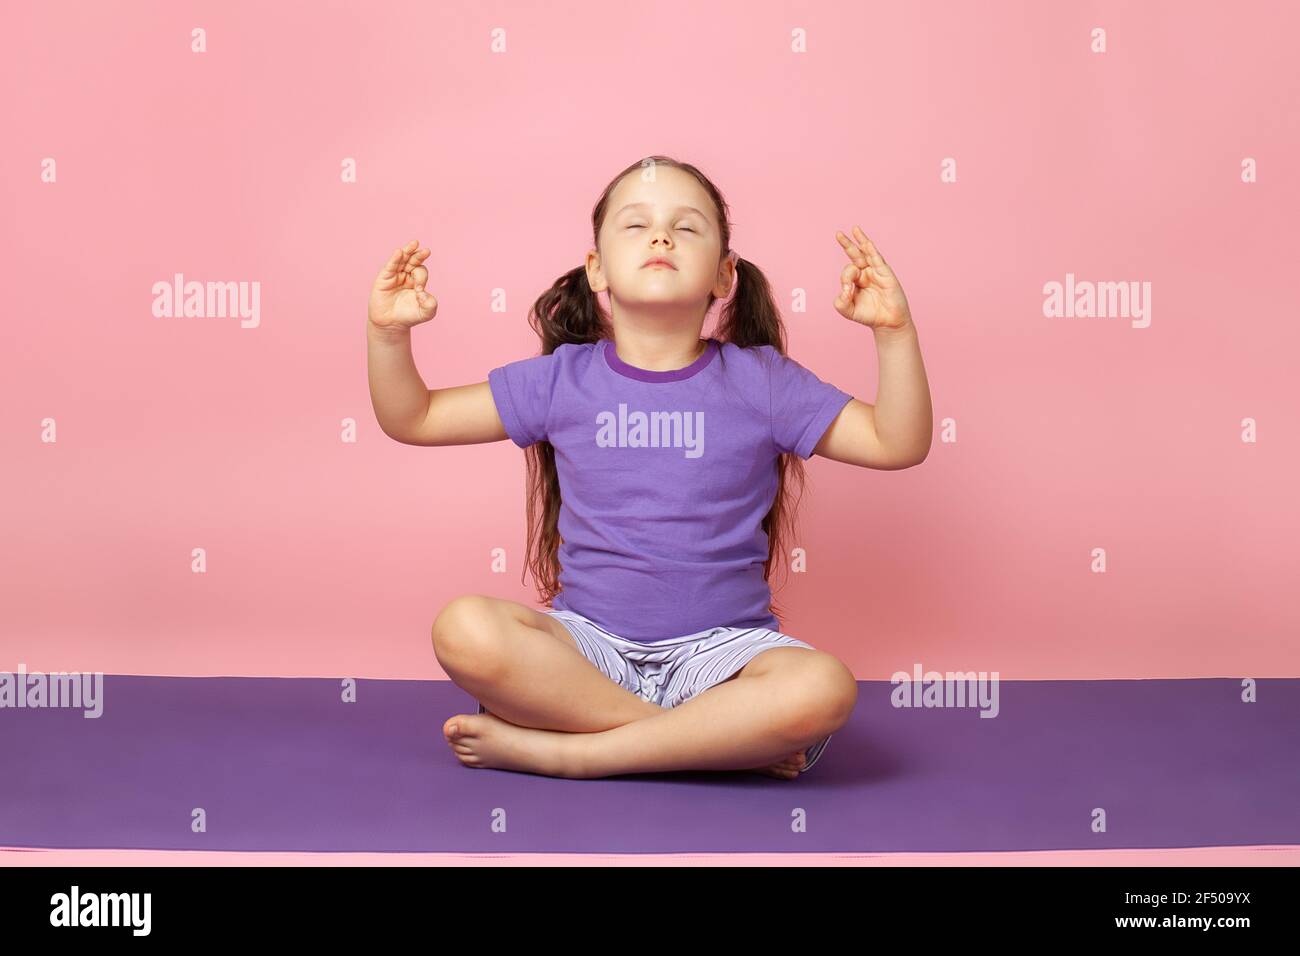 una ragazza con gli occhi chiusi fa yoga, si siede in posizione di loto o prega su un tappeto viola, isolato su uno sfondo rosa Foto Stock